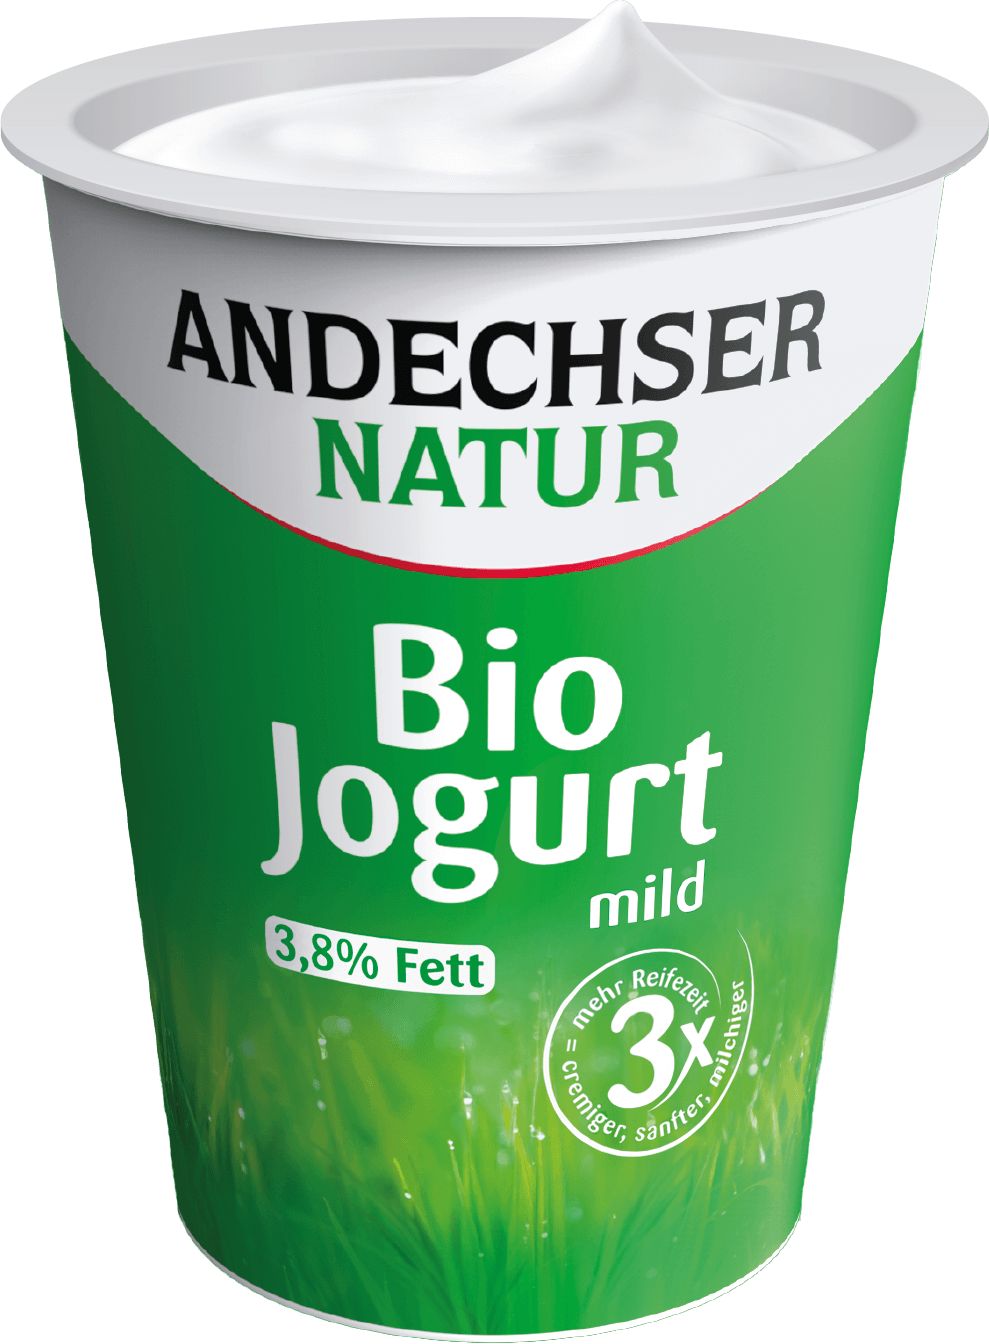 Andechser Natur Bio Jogurt im Becher 